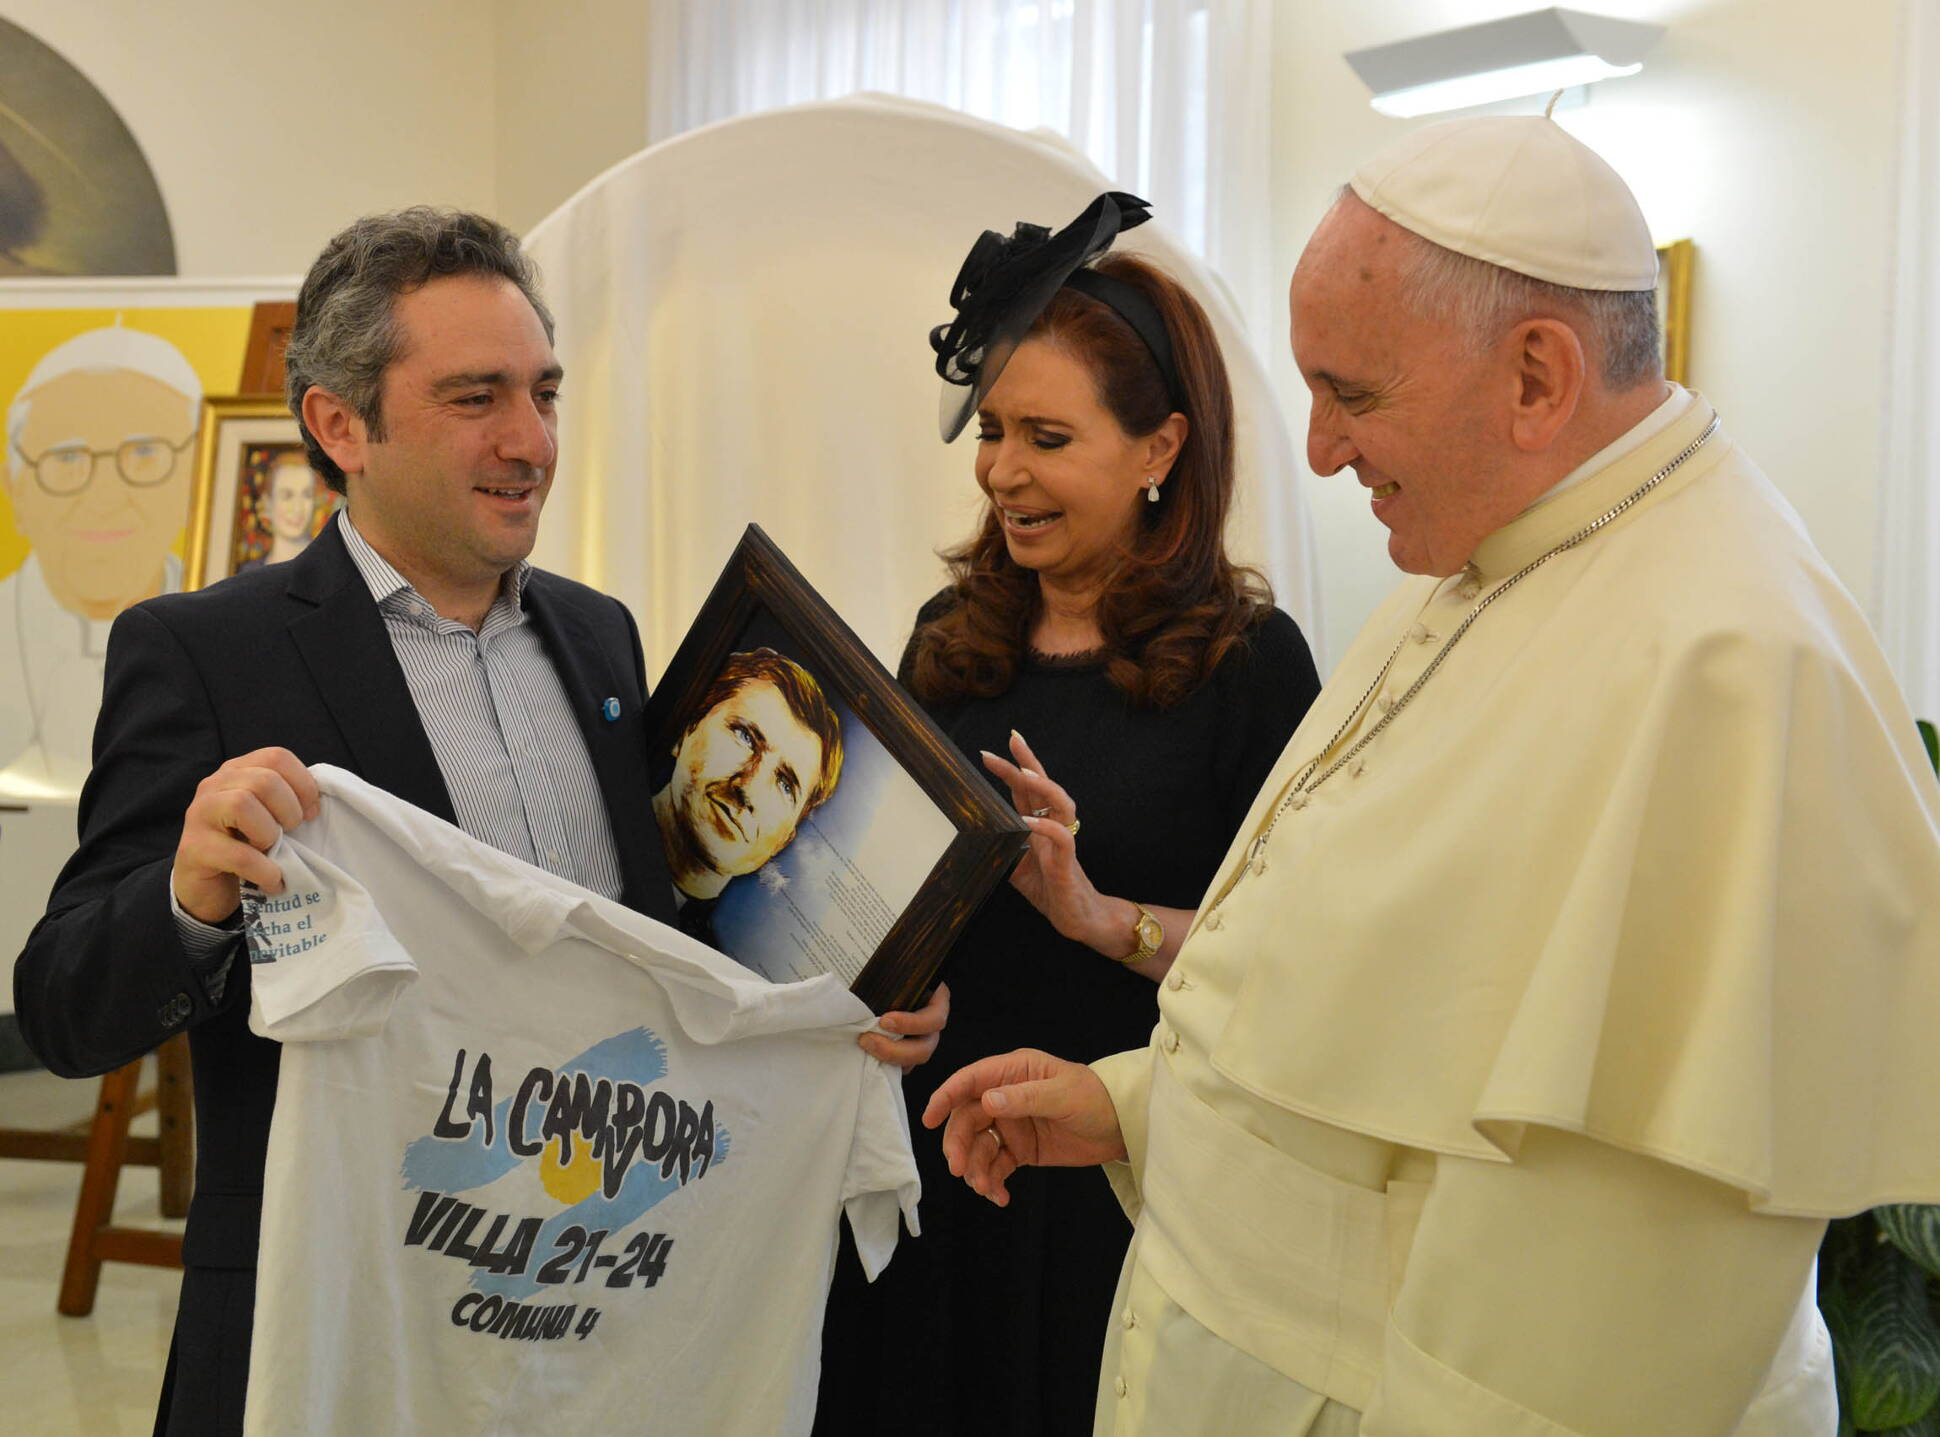 La Presidenta, el Papa Francisco y la comitiva oficial en el Vaticano